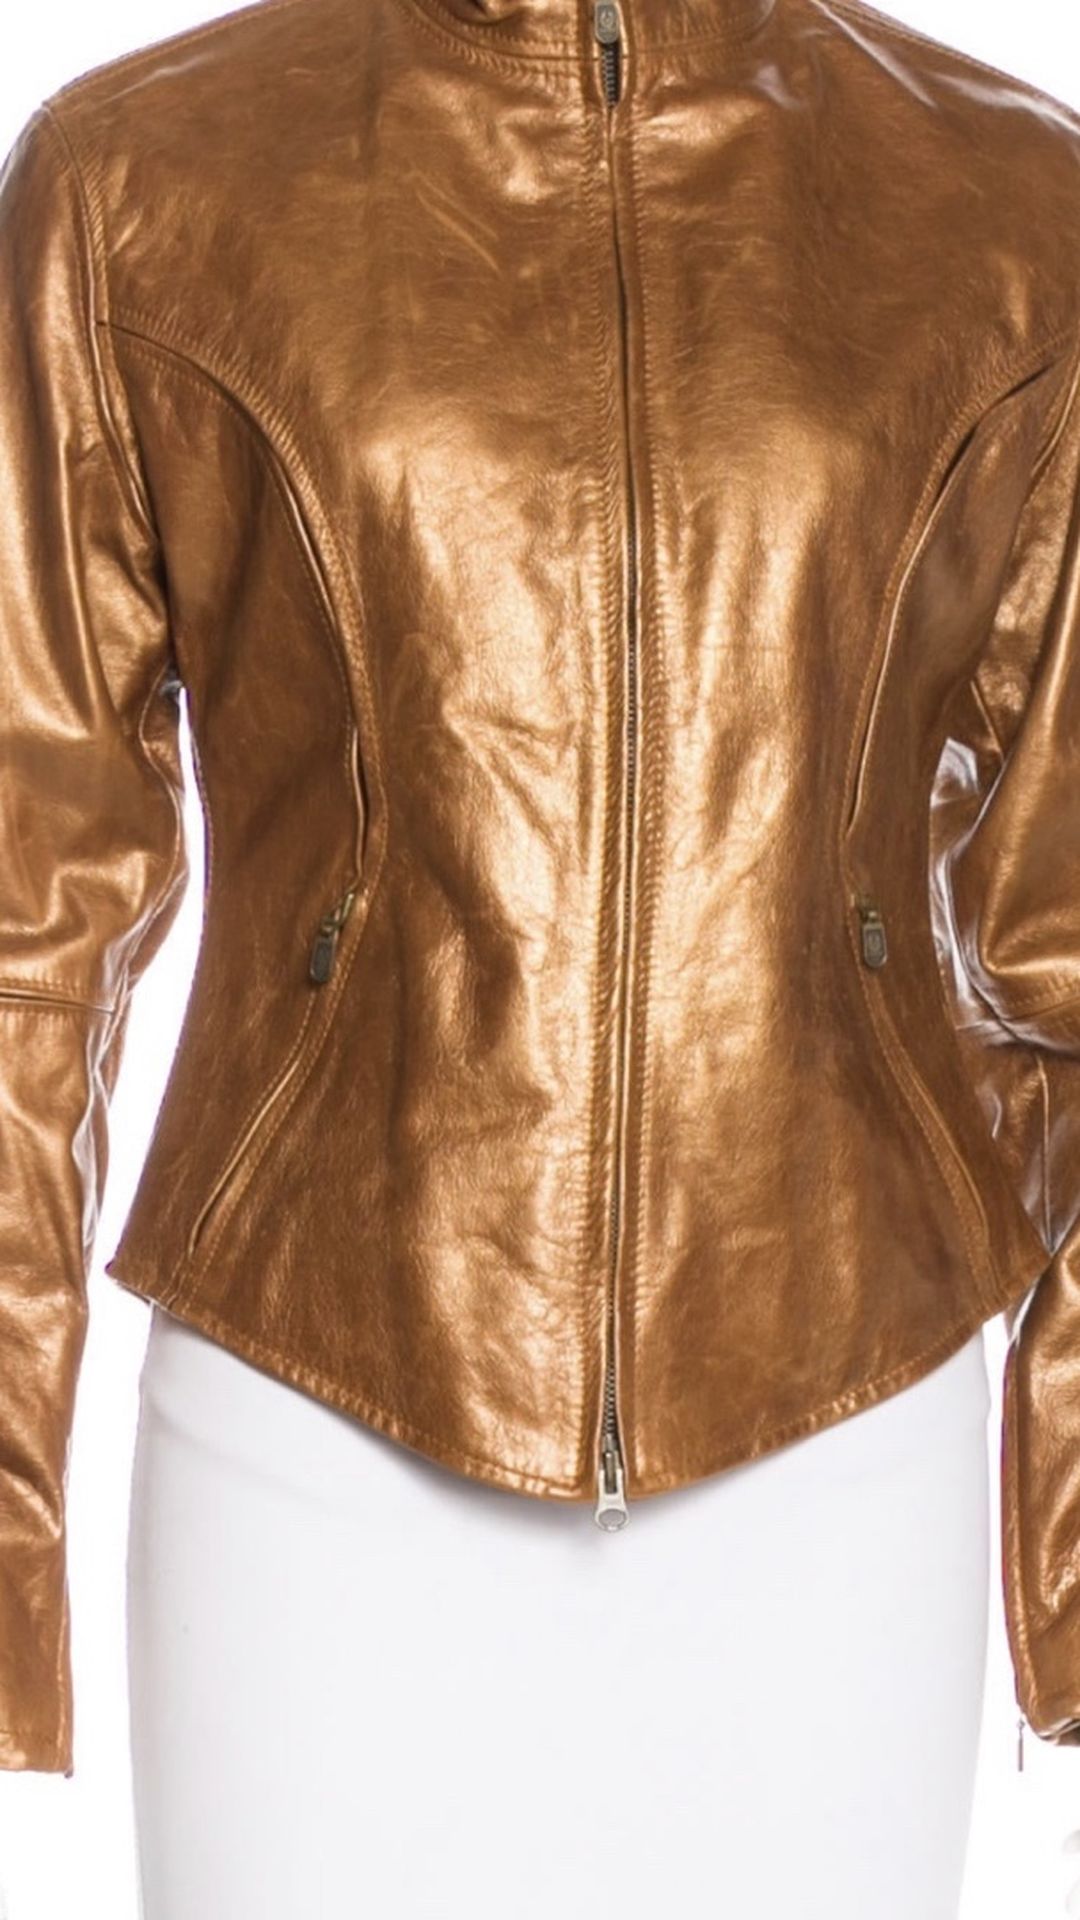 Leather Jacket (Belstaff), Sz 44 (Med)